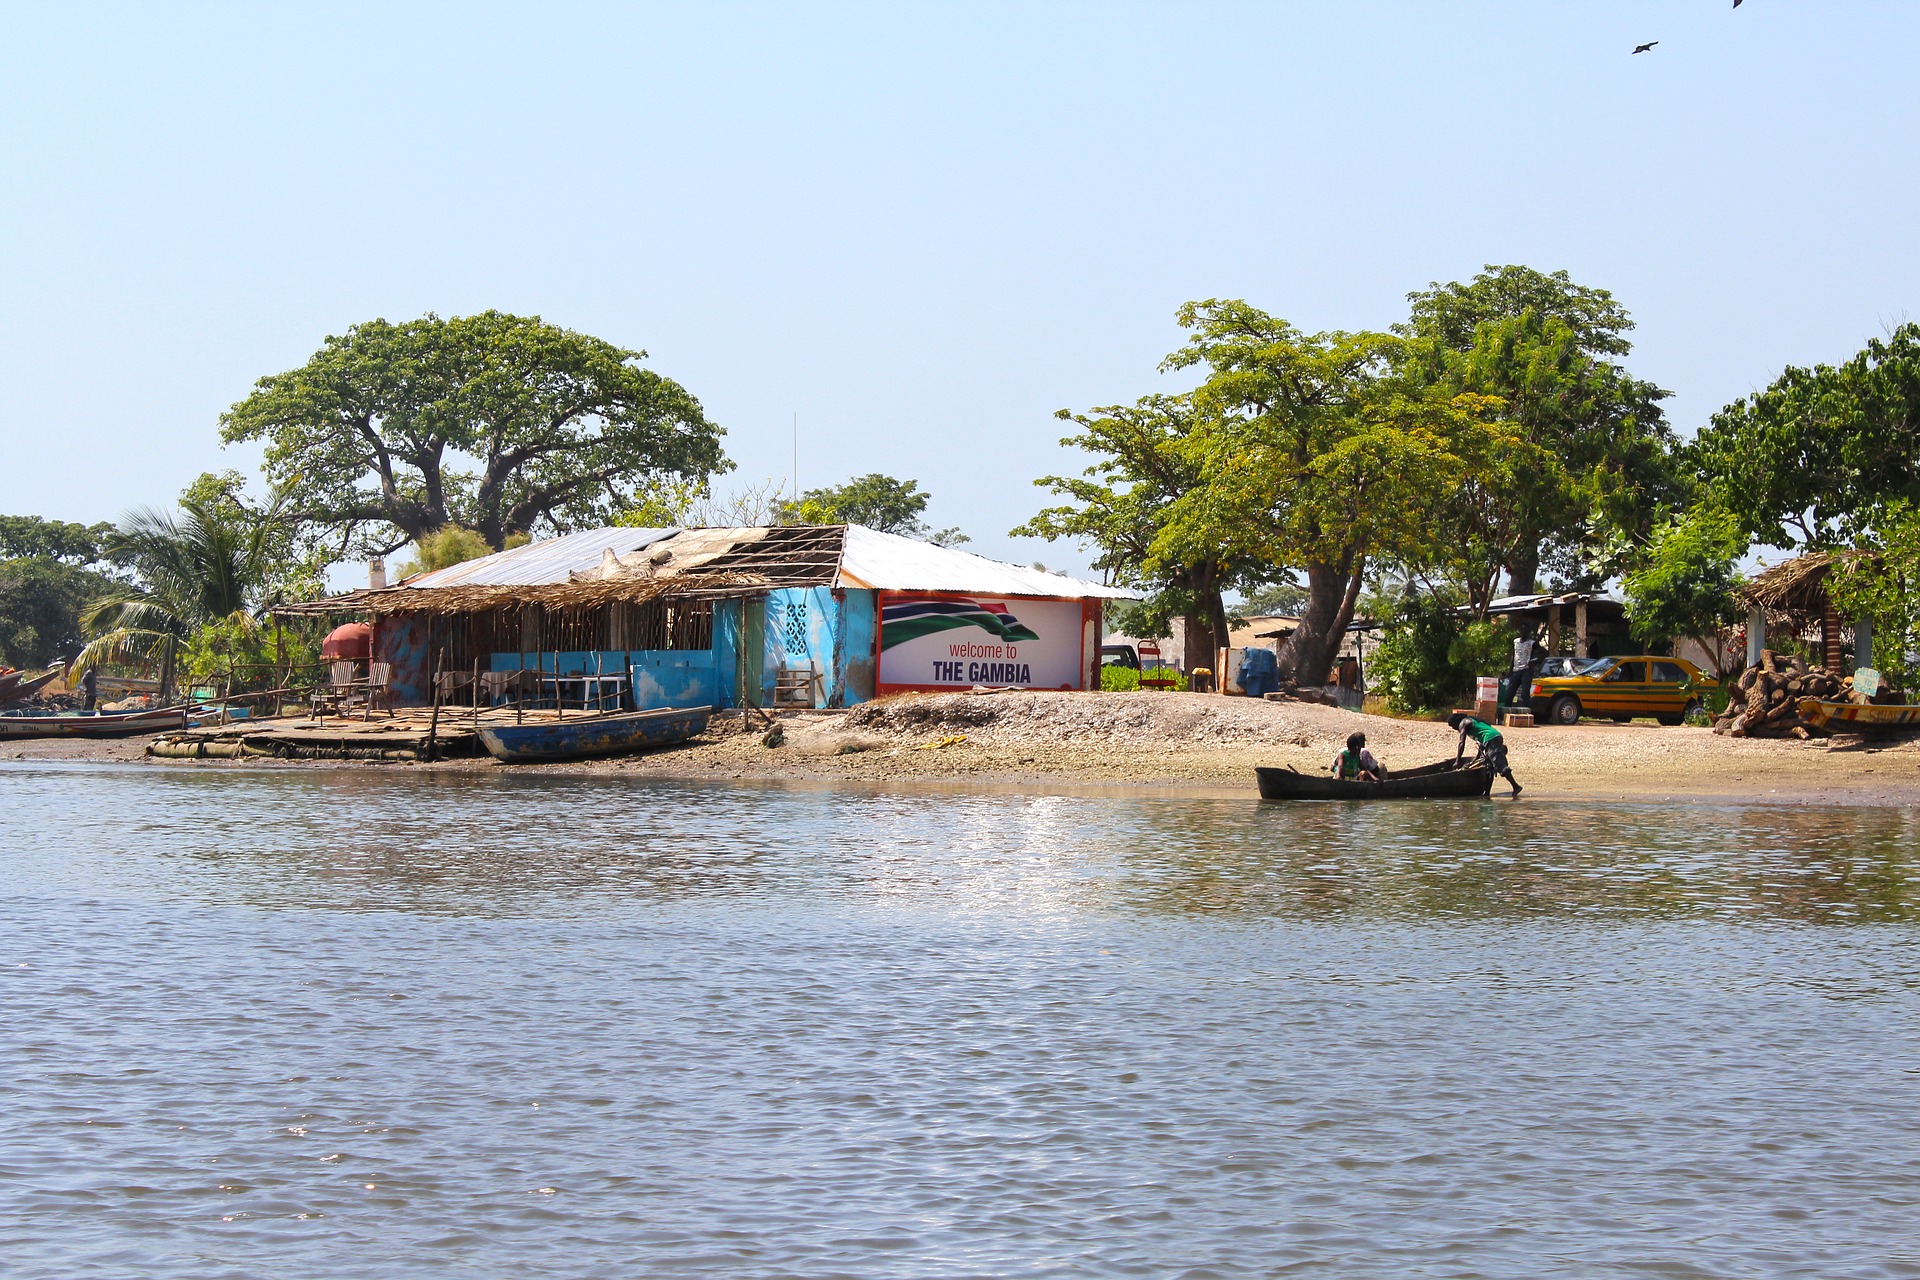 gambia-banjul-river-scene.jpg